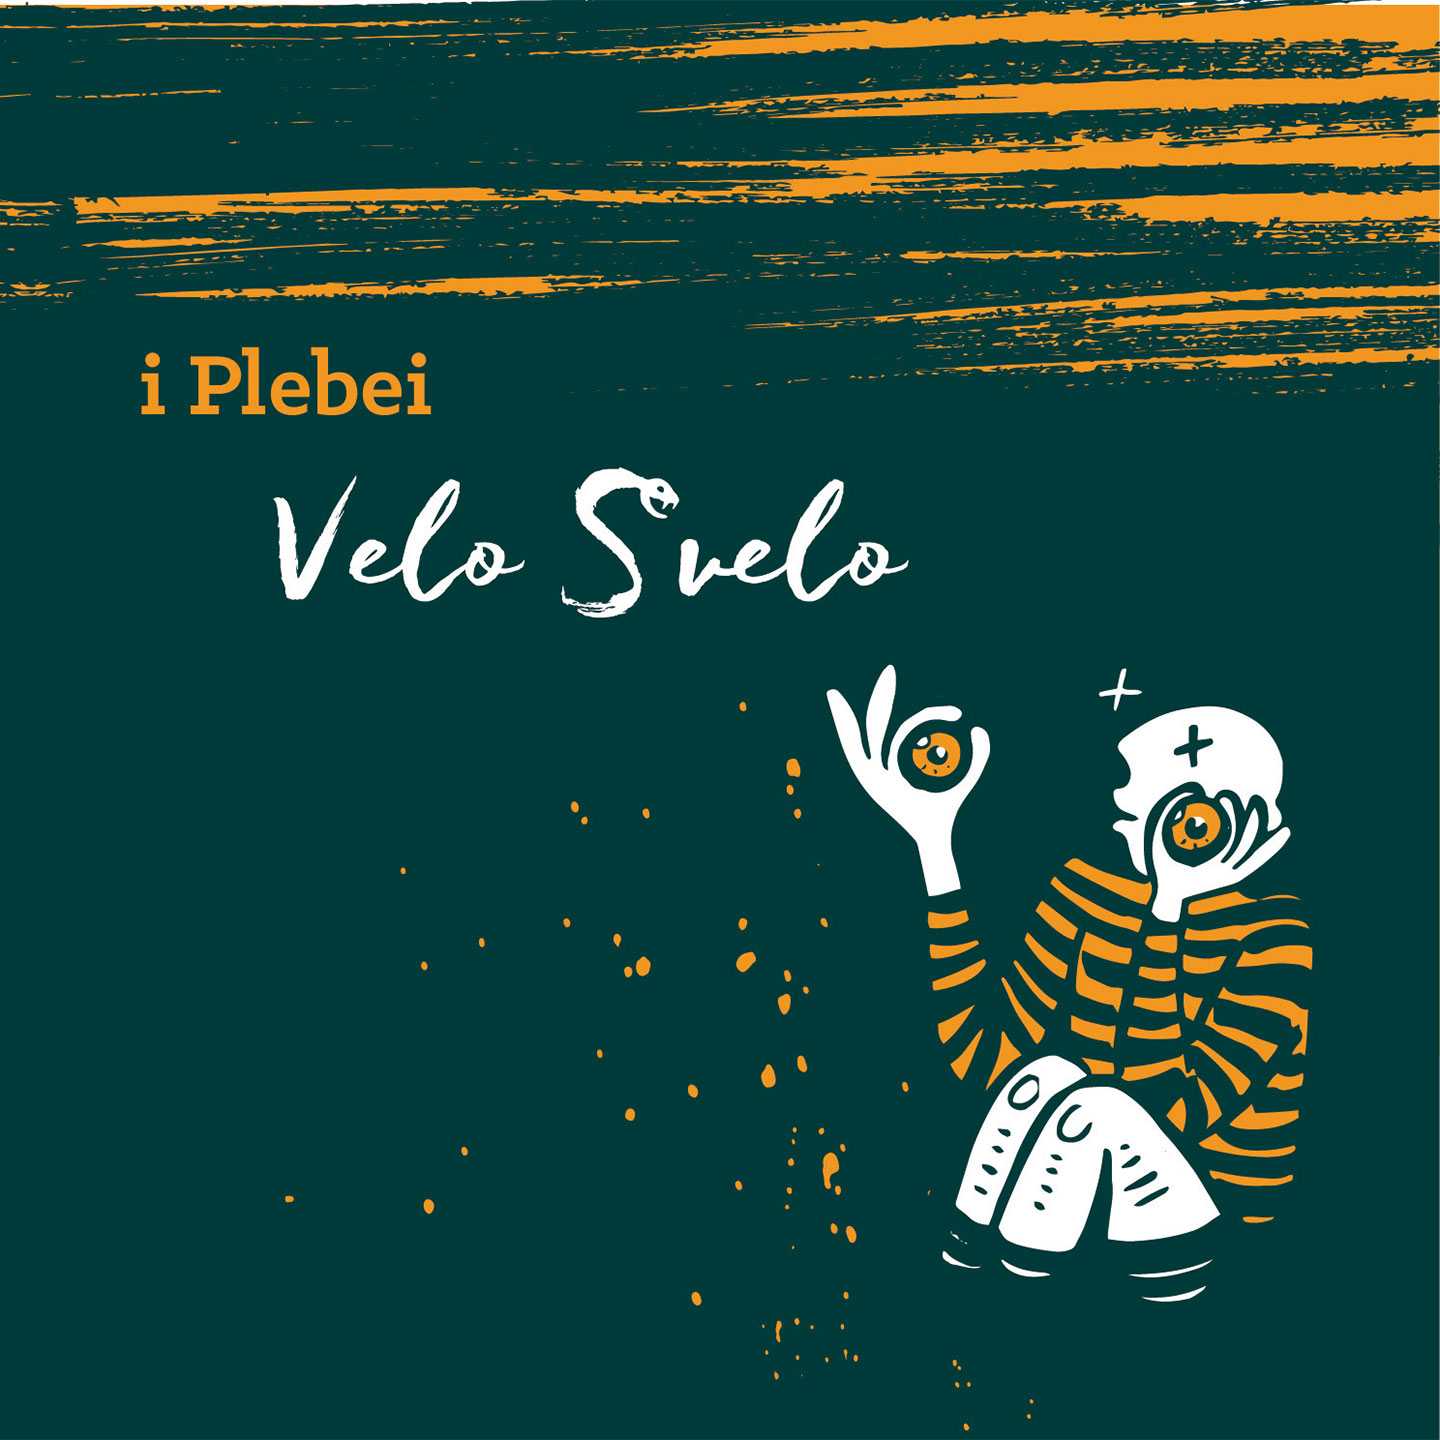 "Velo S velo" il nuovo disco della band trentina I Plebei